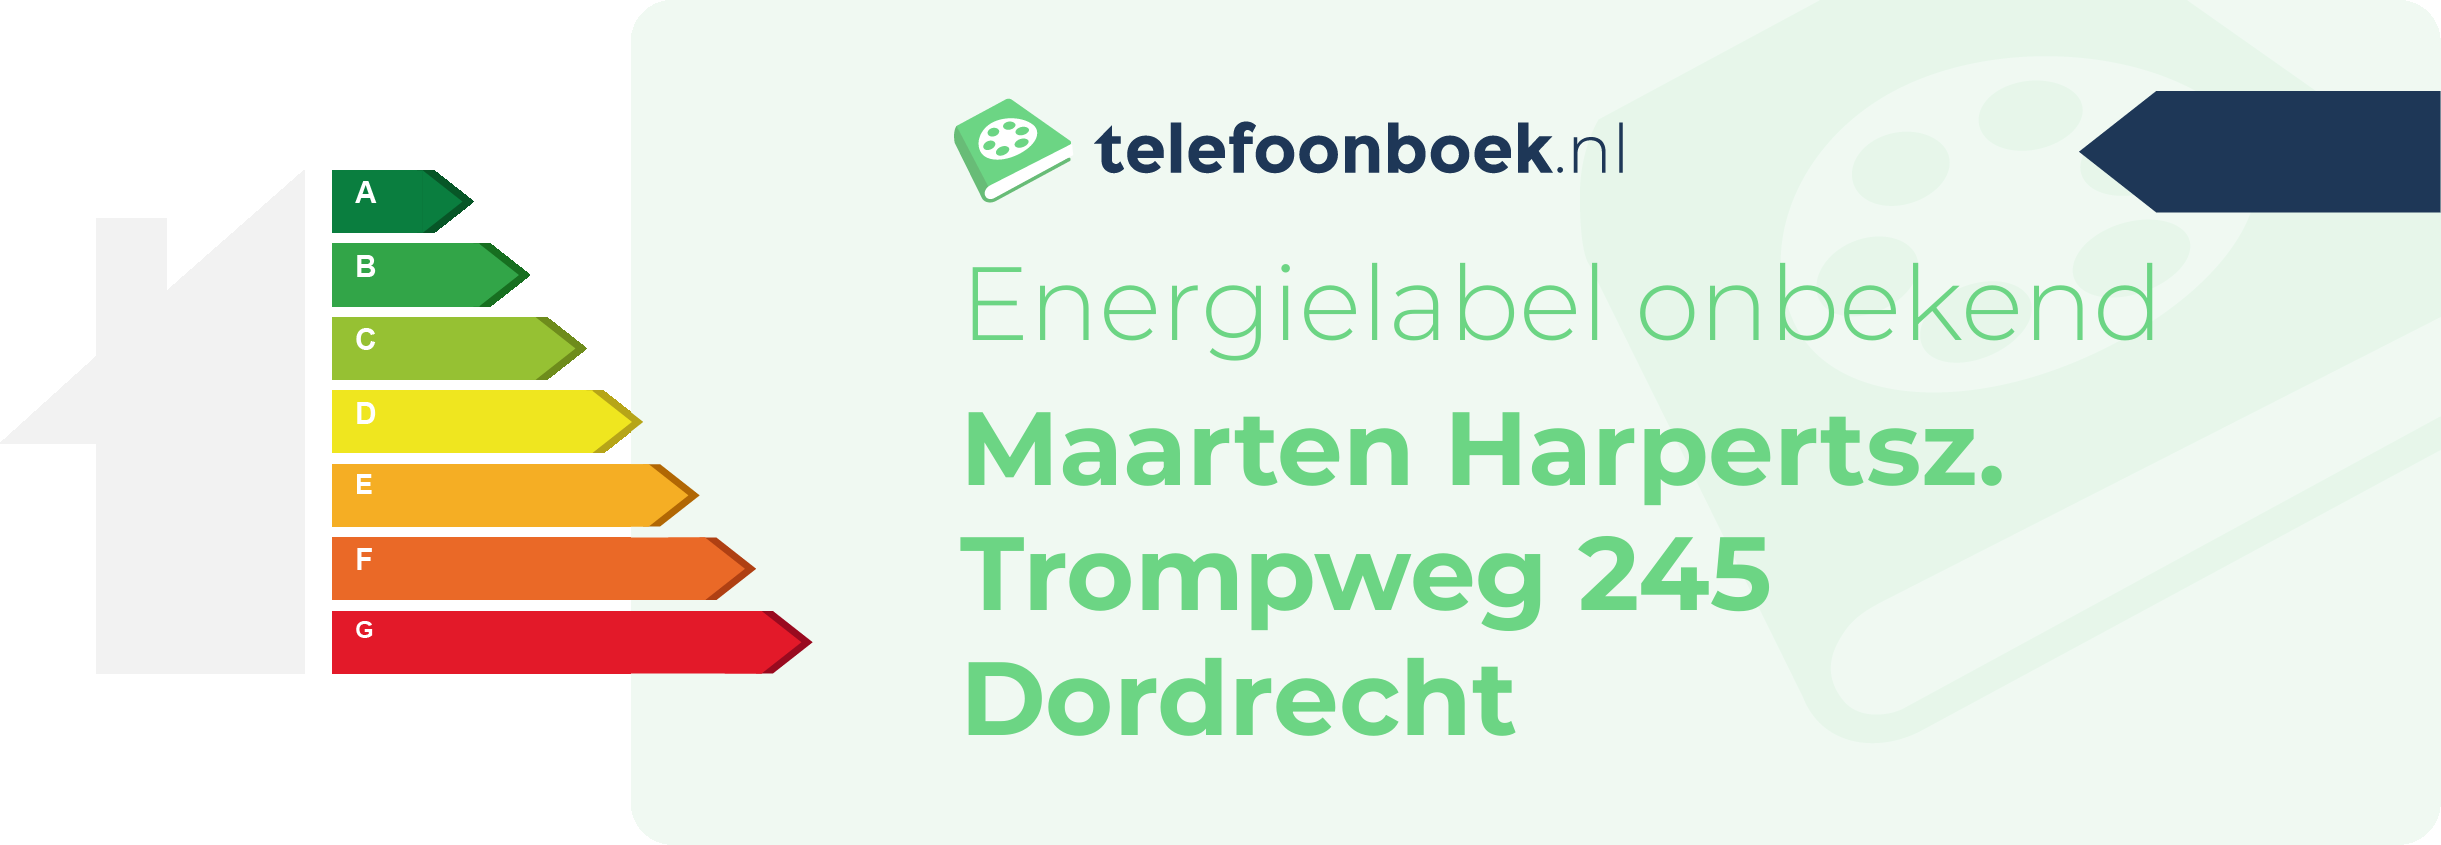 Energielabel Maarten Harpertsz. Trompweg 245 Dordrecht